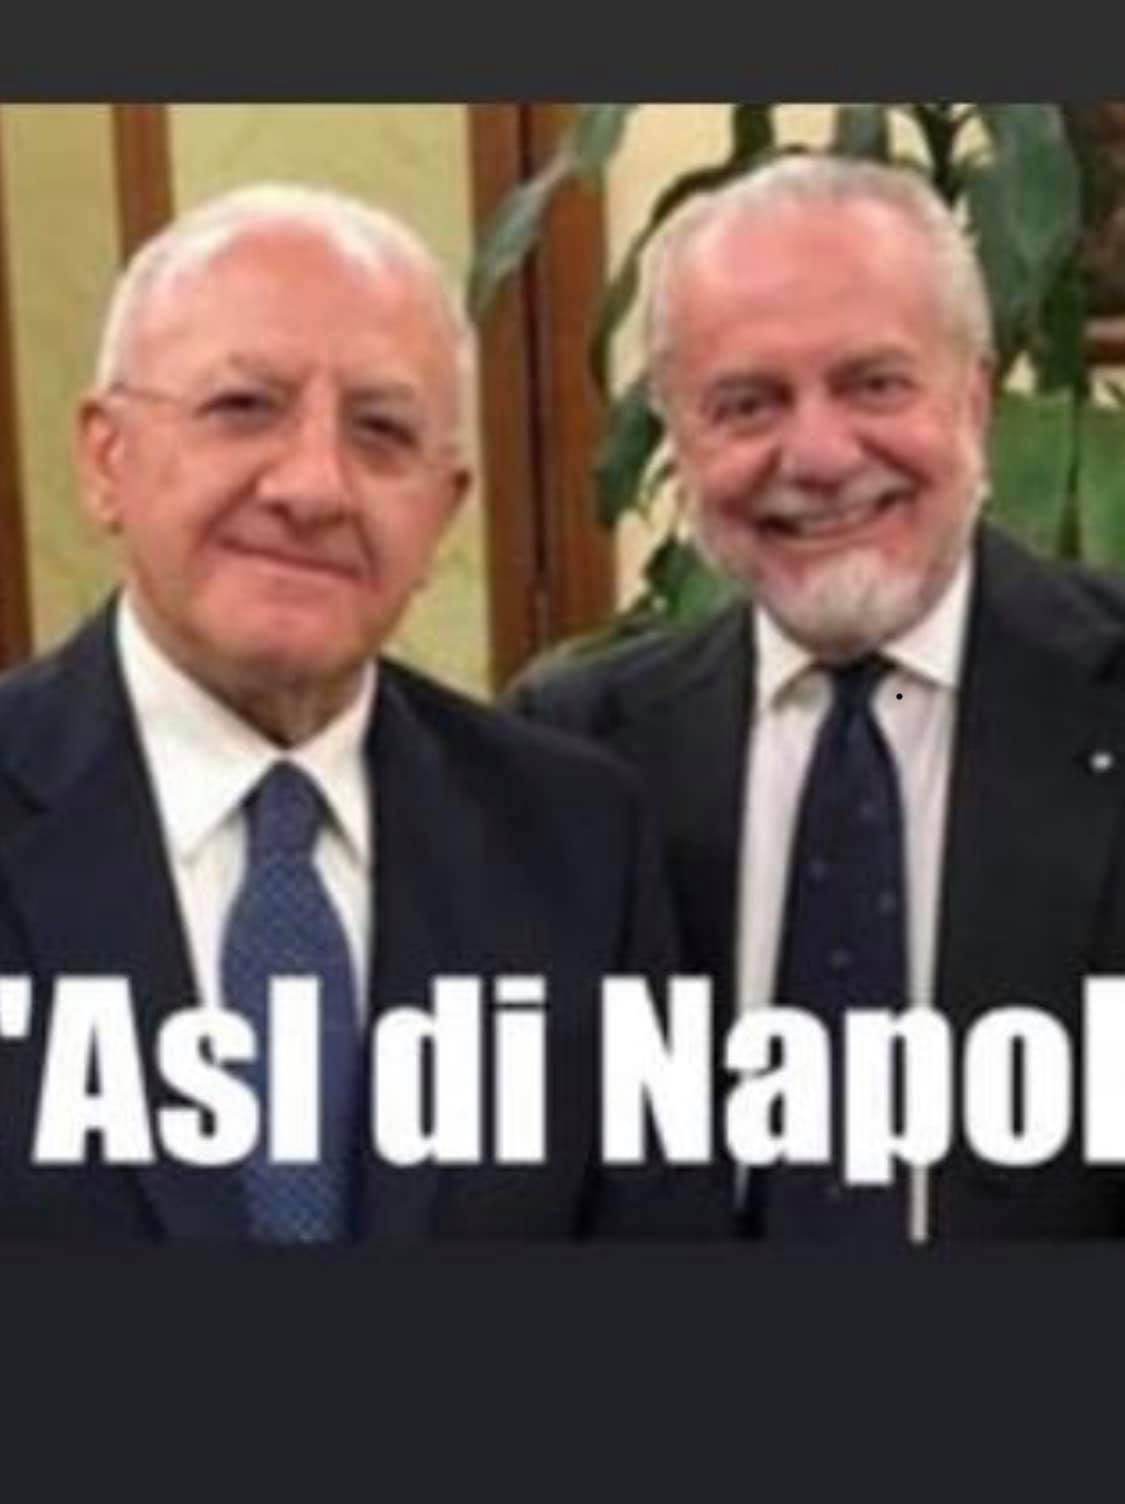 , Che peccato! Juventus Napoli non si gioca!, COEMM